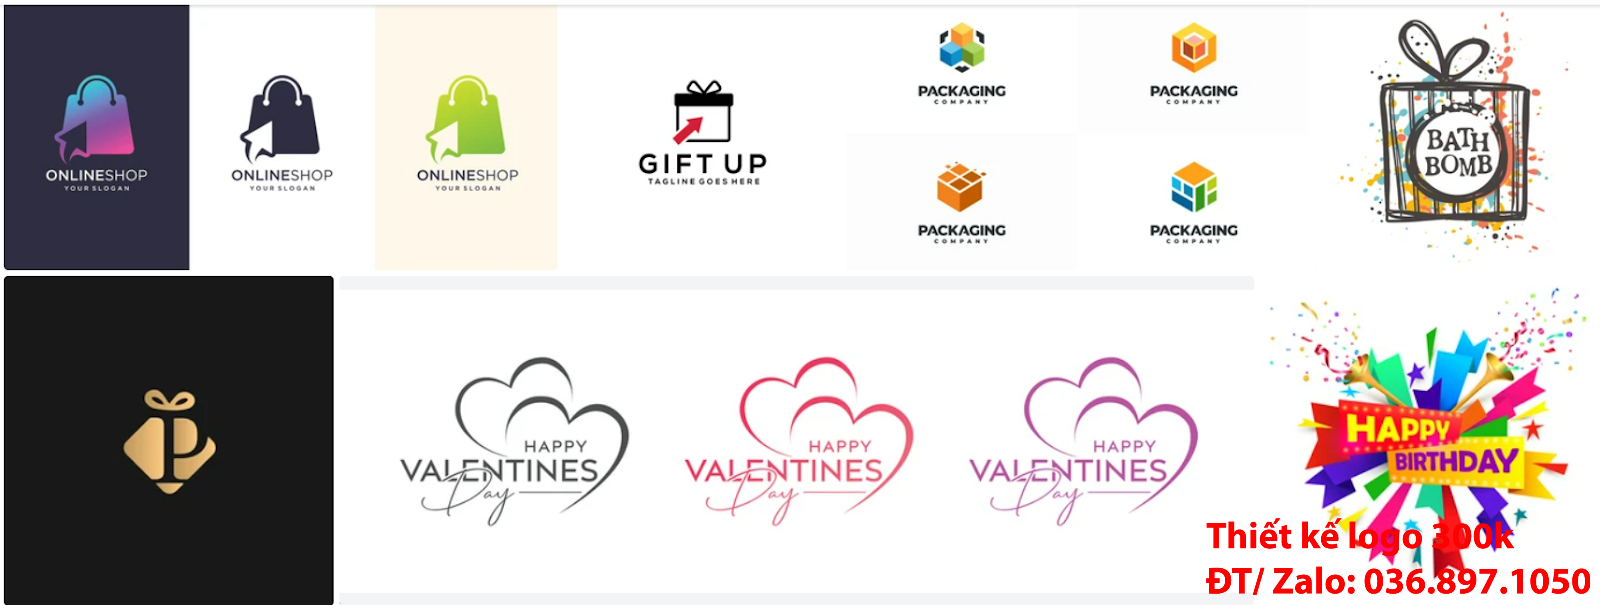 Dịch vụ thiết kế mẫu logo đẹp quà tặng sáng tạo online tại thành phố Hồ Chí Minh